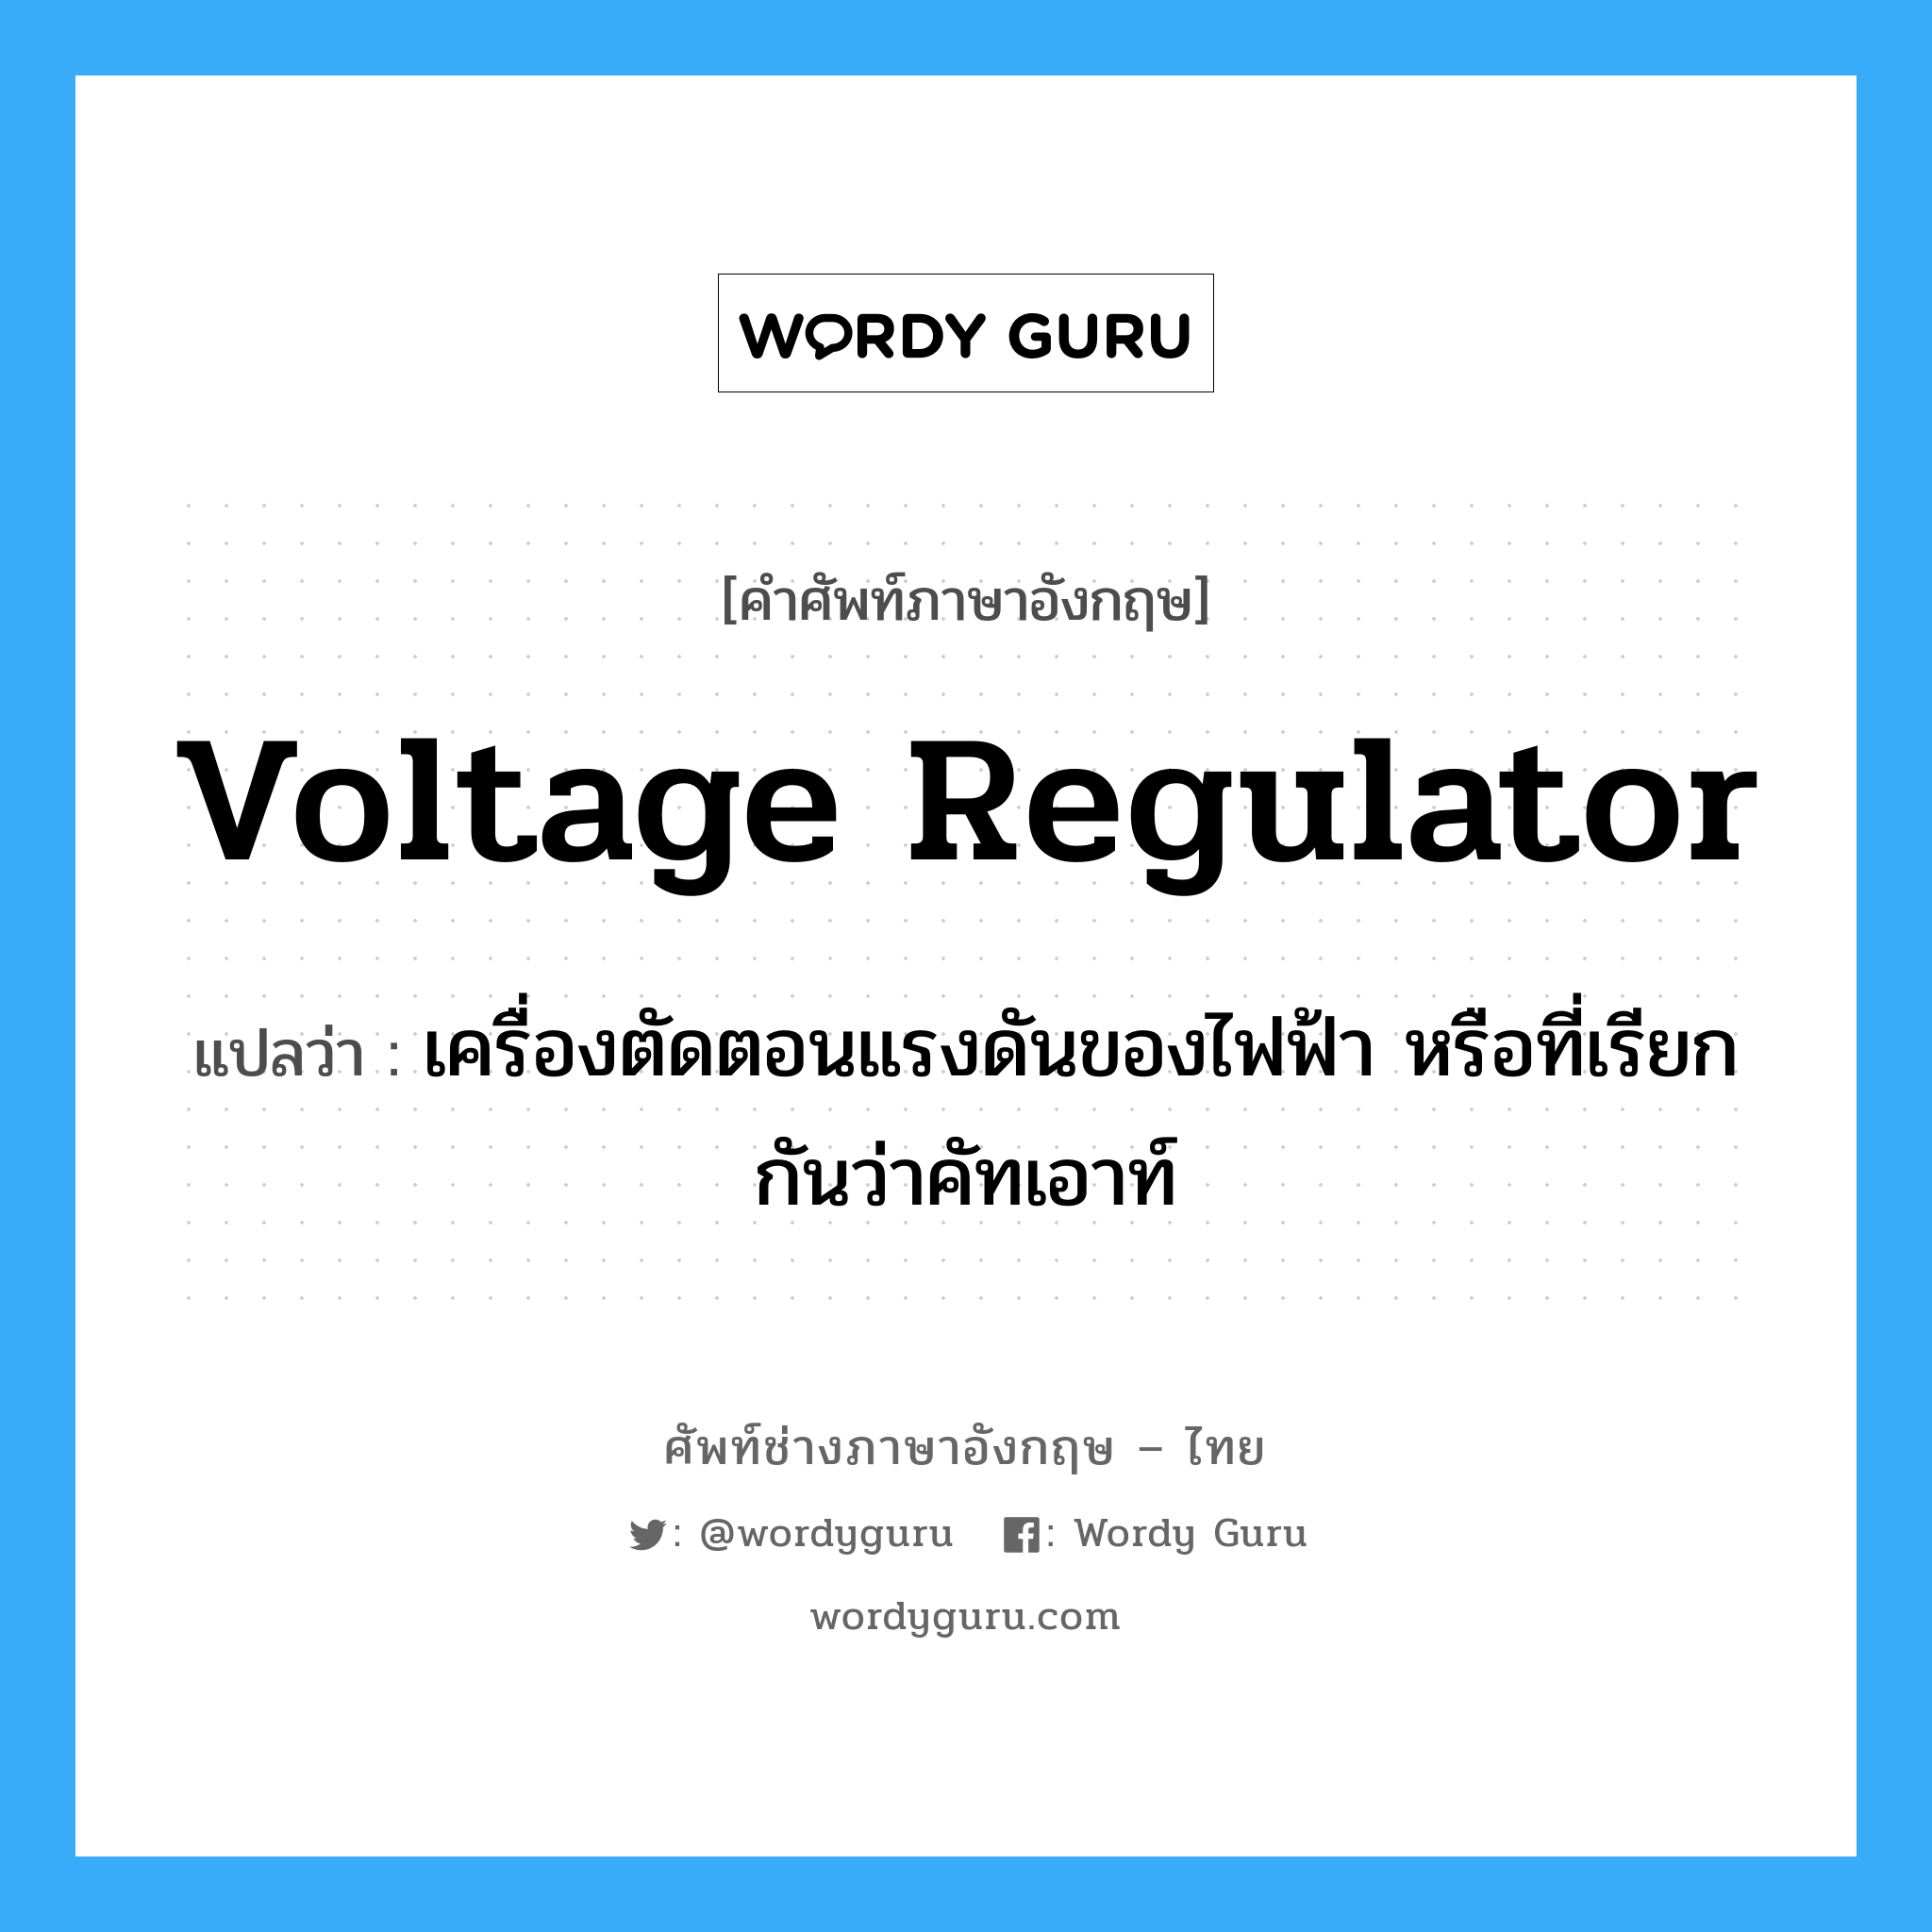 voltage regulator แปลว่า?, คำศัพท์ช่างภาษาอังกฤษ - ไทย voltage regulator คำศัพท์ภาษาอังกฤษ voltage regulator แปลว่า เครื่องตัดตอนแรงดันของไฟฟ้า หรือที่เรียกกันว่าคัทเอาท์